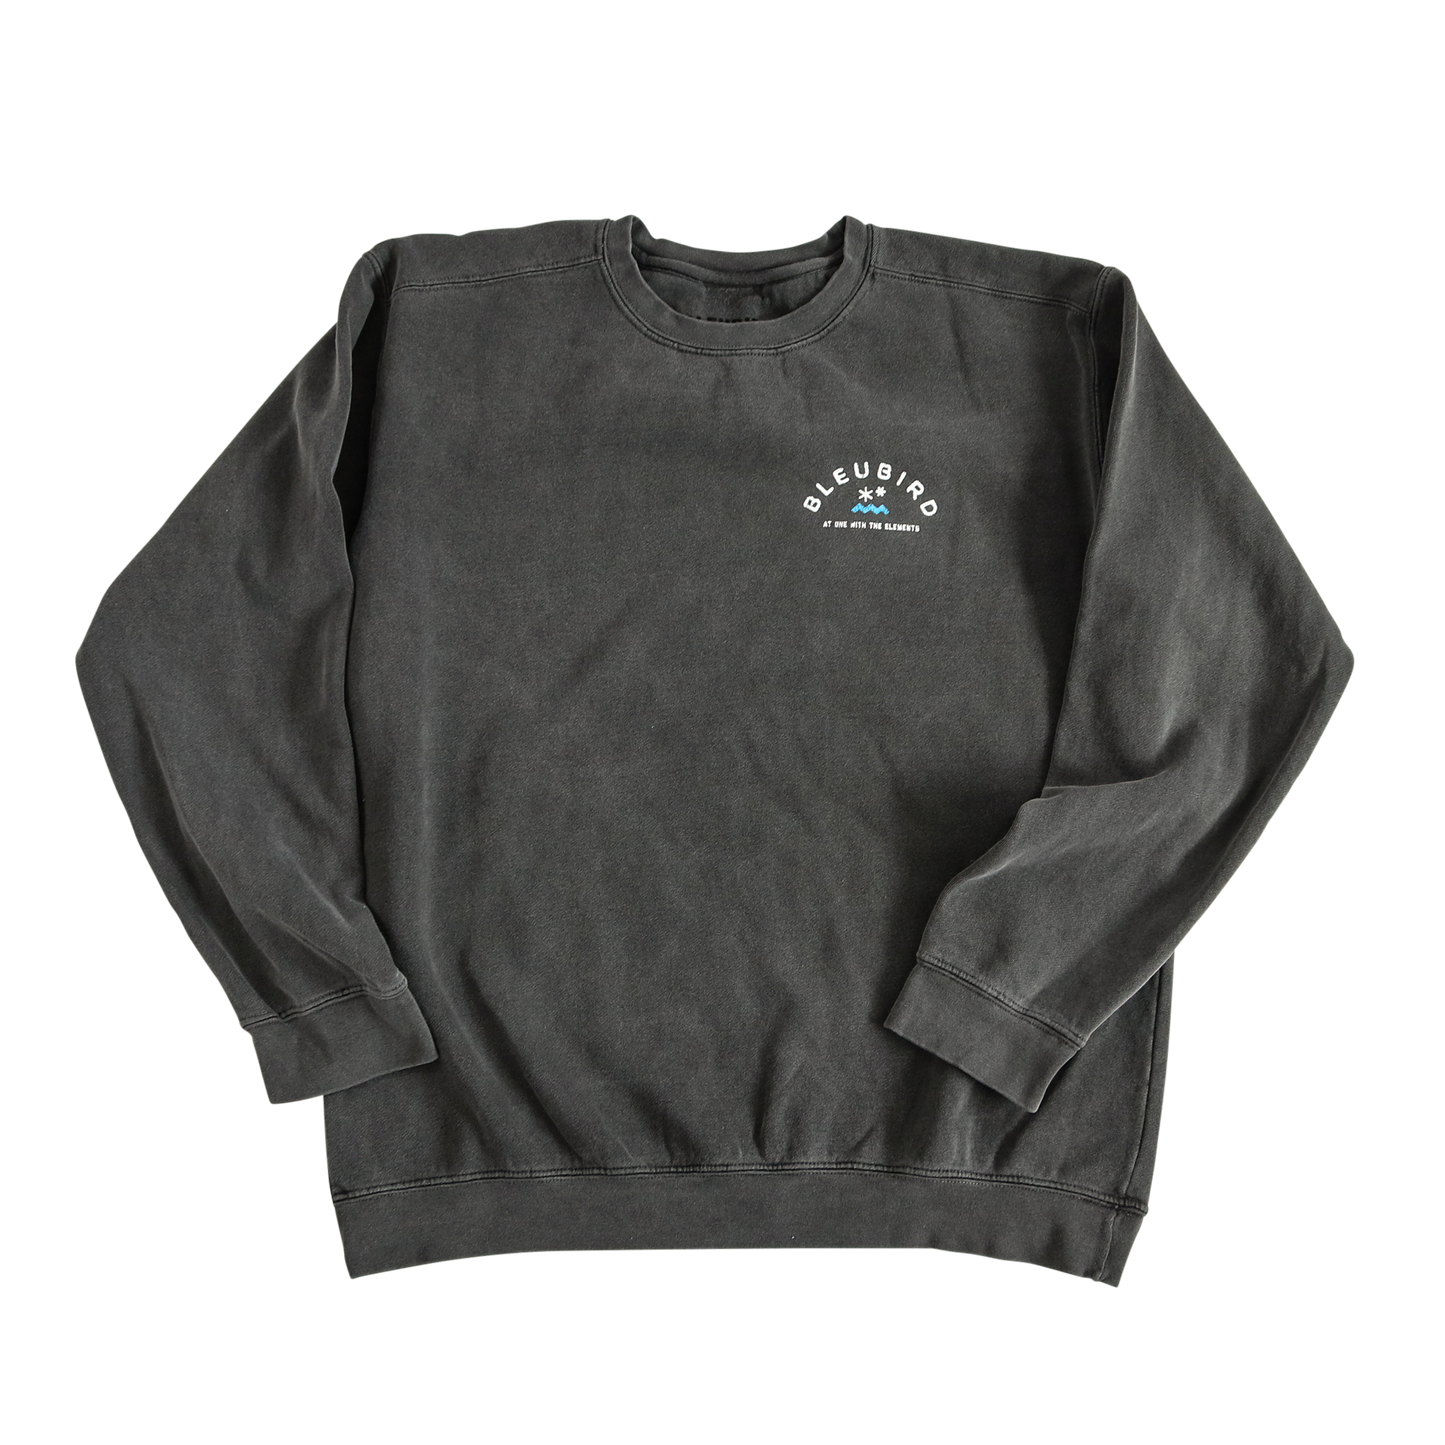 Bleubird Original Crew Sweater - Charcoal